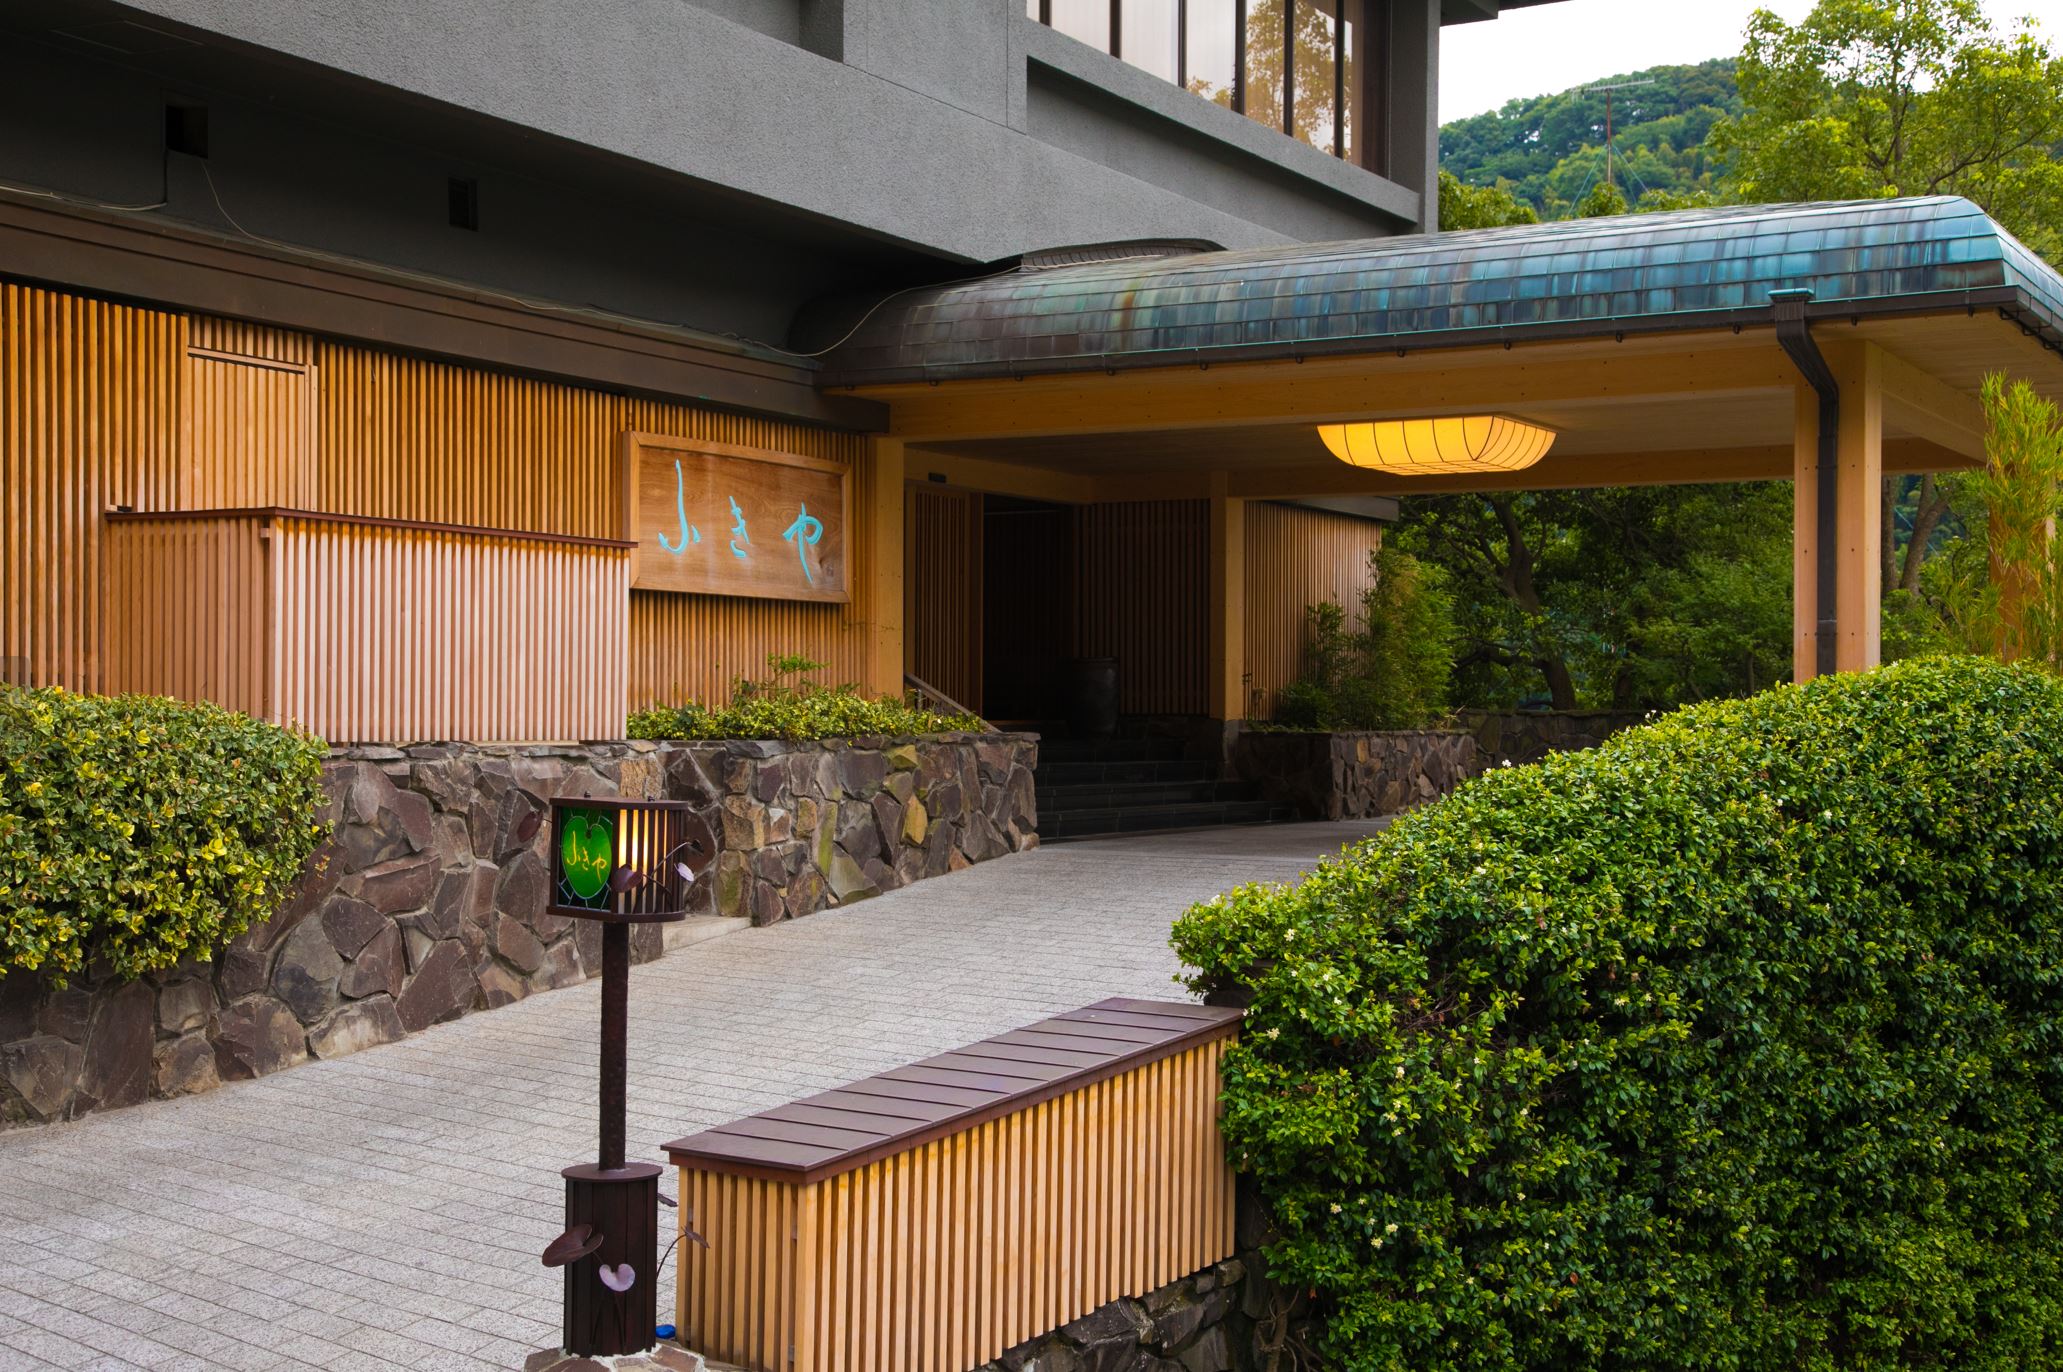 ひとりでゆっくり温泉三昧。神奈川や静岡で穴場の温泉宿